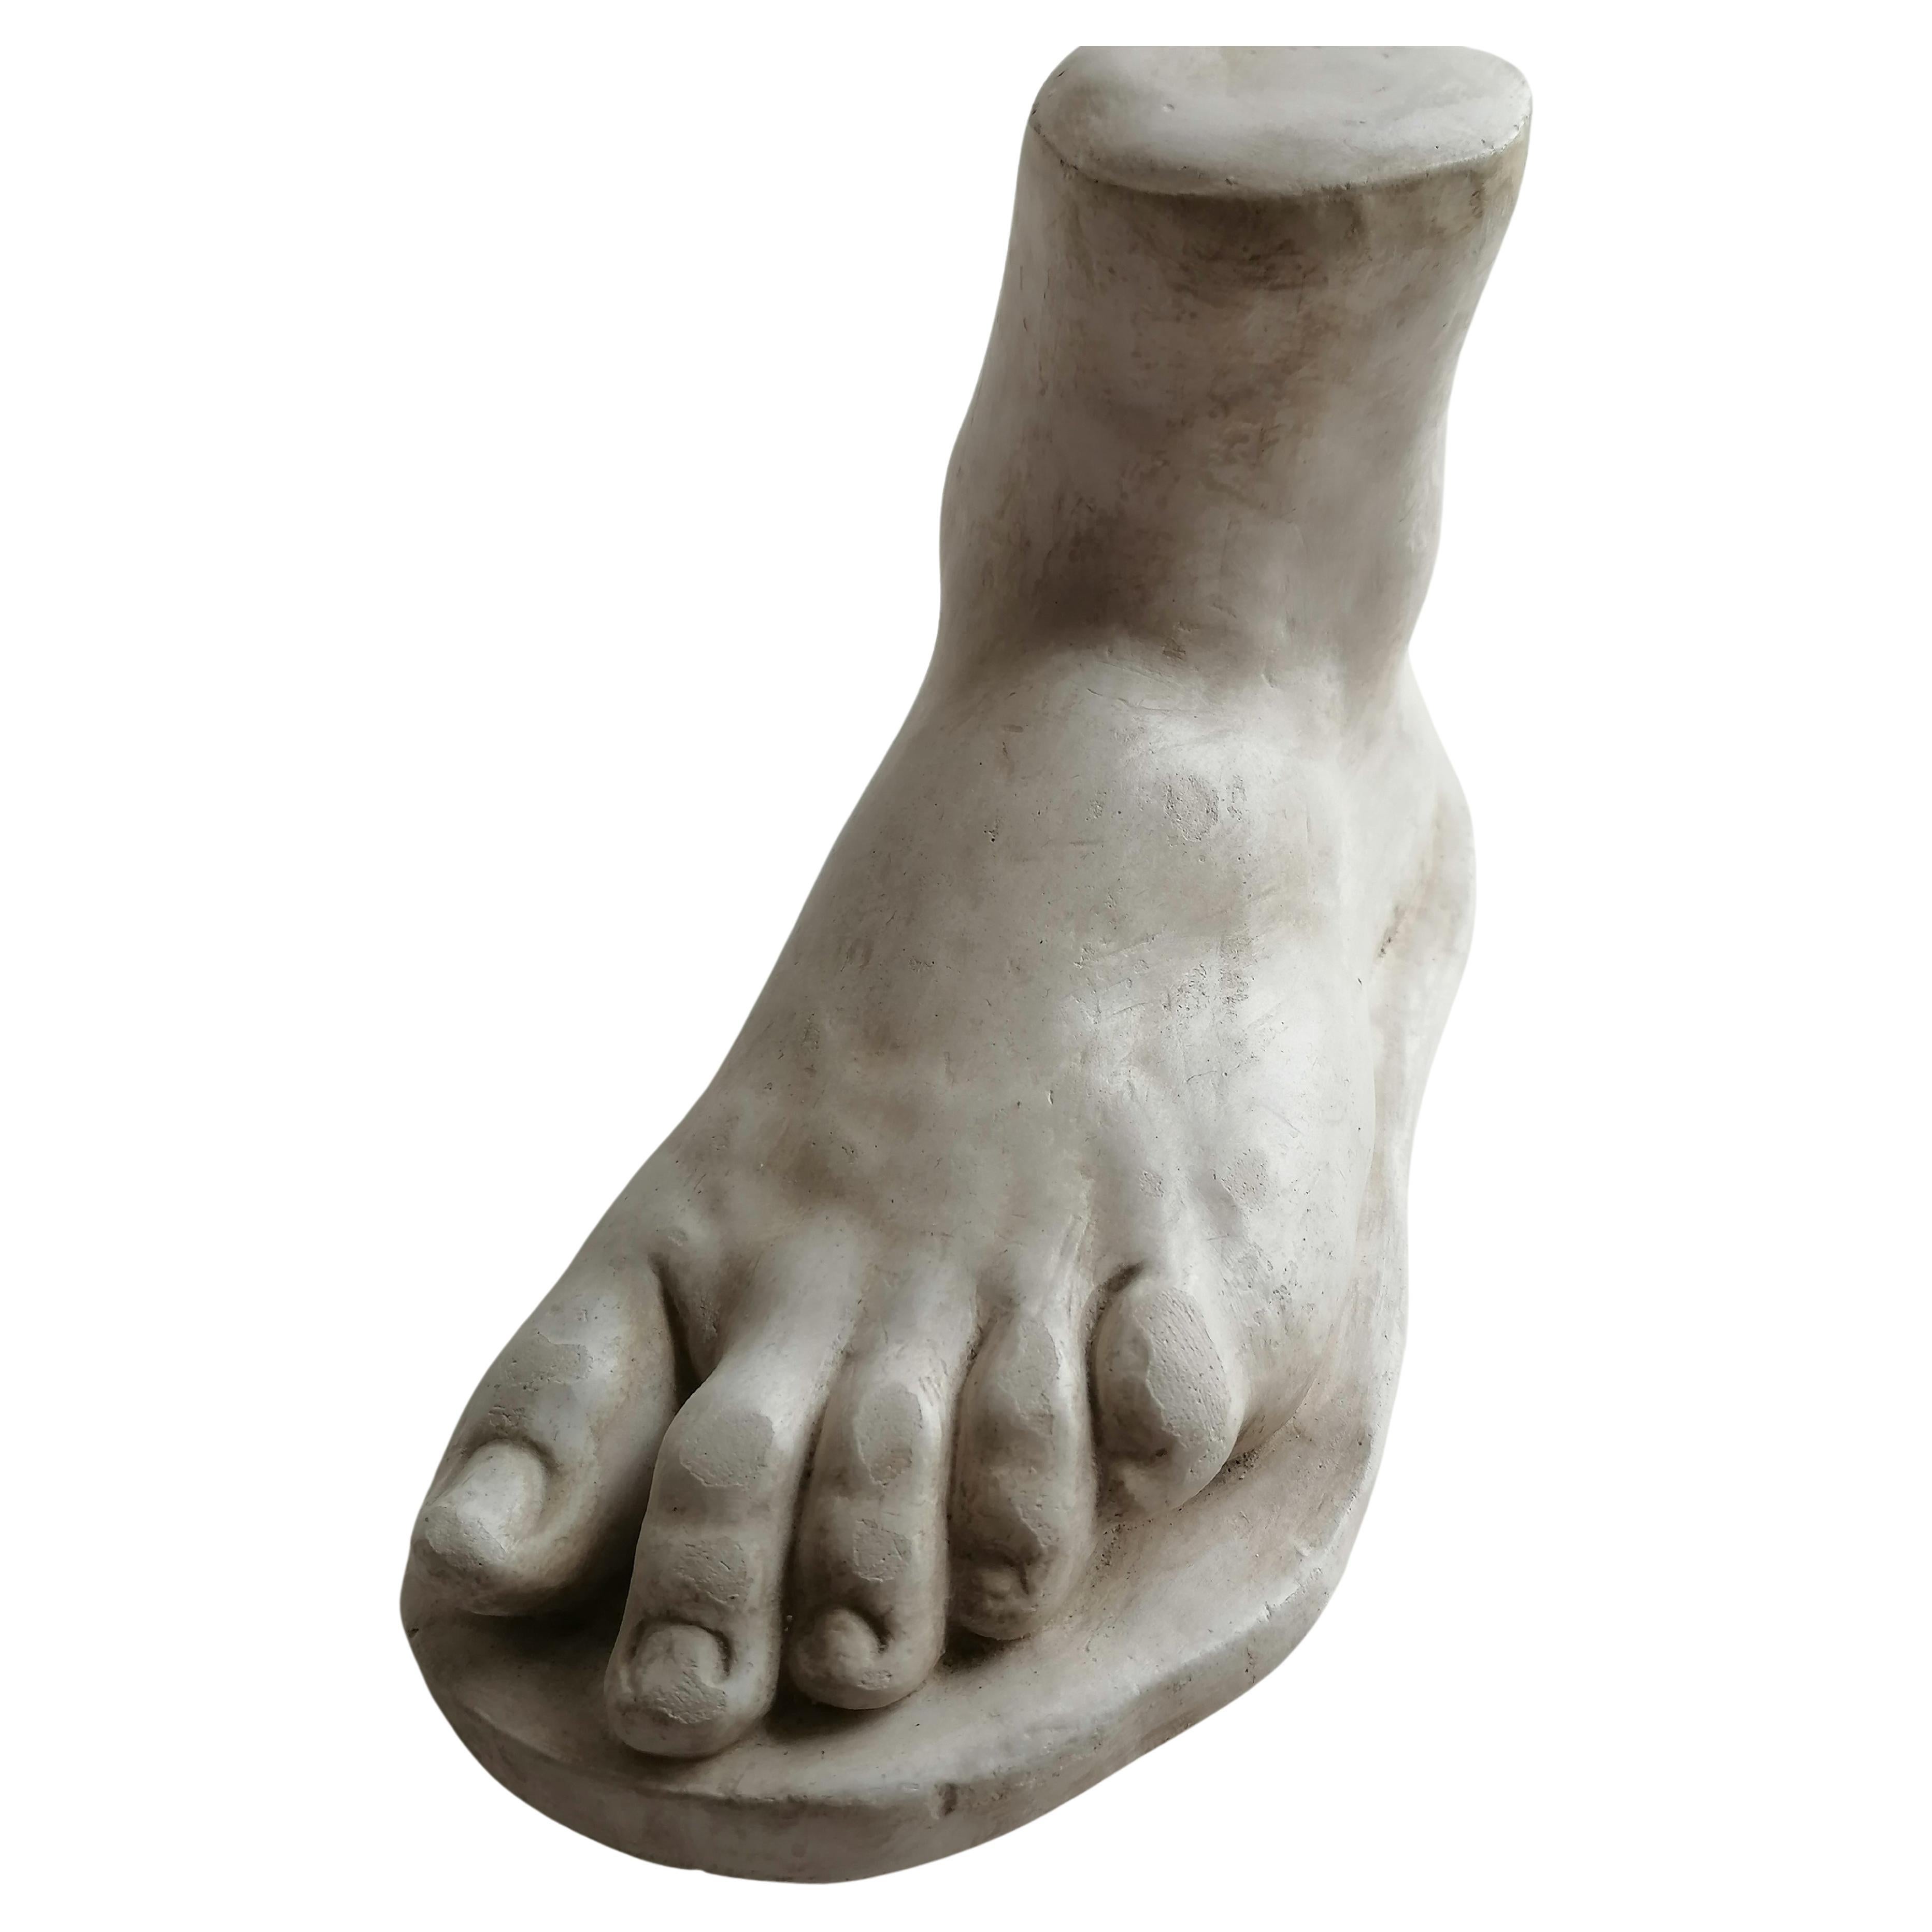 Skulptur eines Fußes im klassischen Stil - Marmorina impasto (Marmor d Brüssel